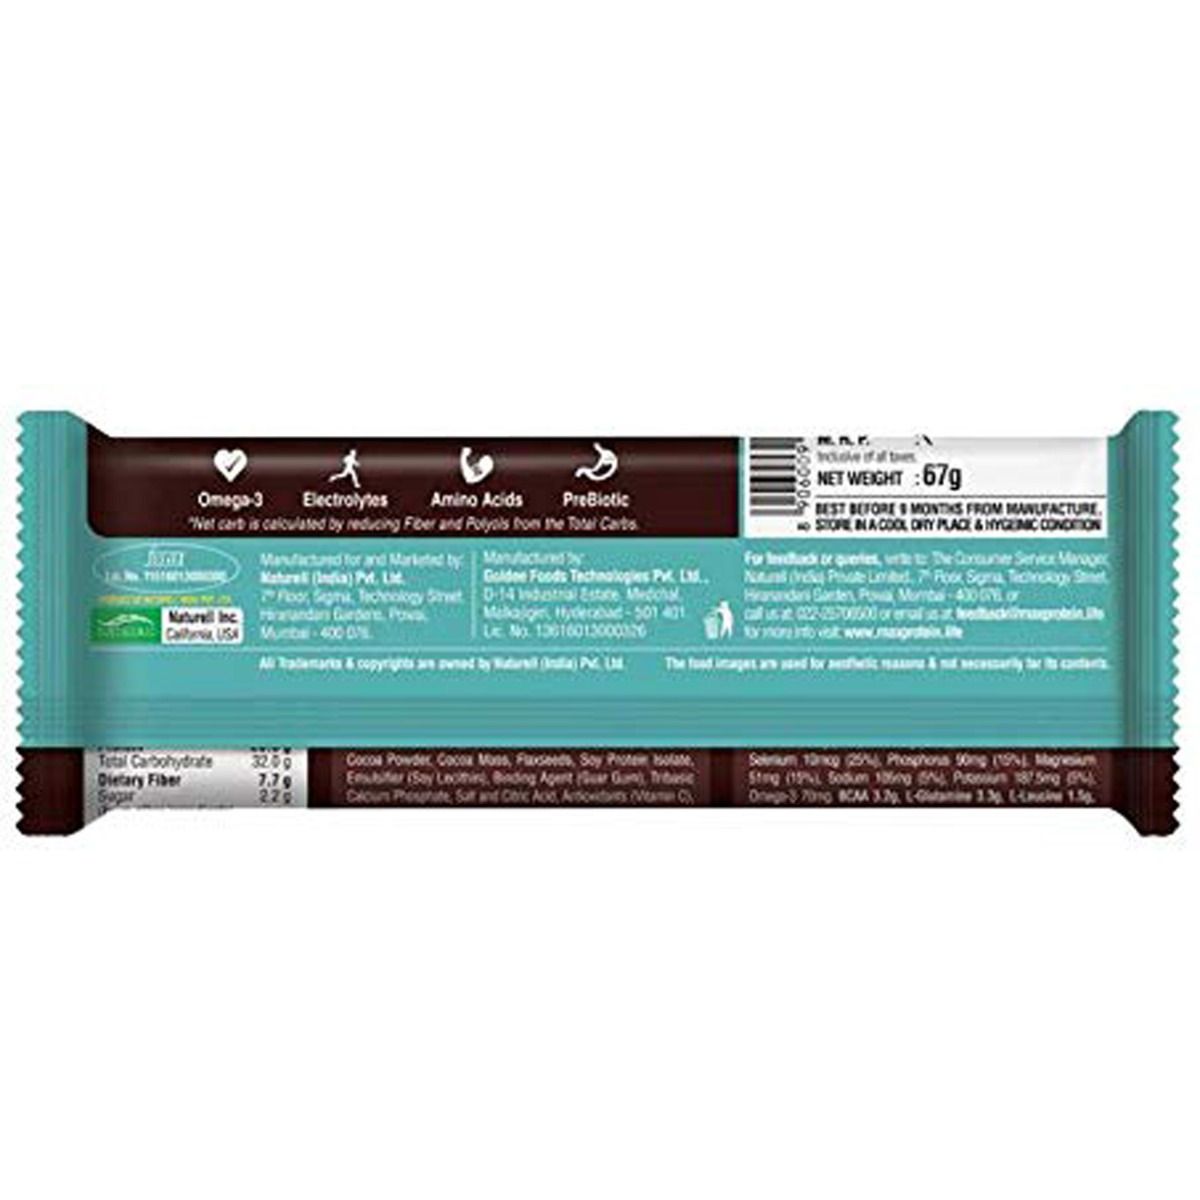 RiteBite Max Protein Active Choco Slim Bar, 67 gm, Pack of 1 